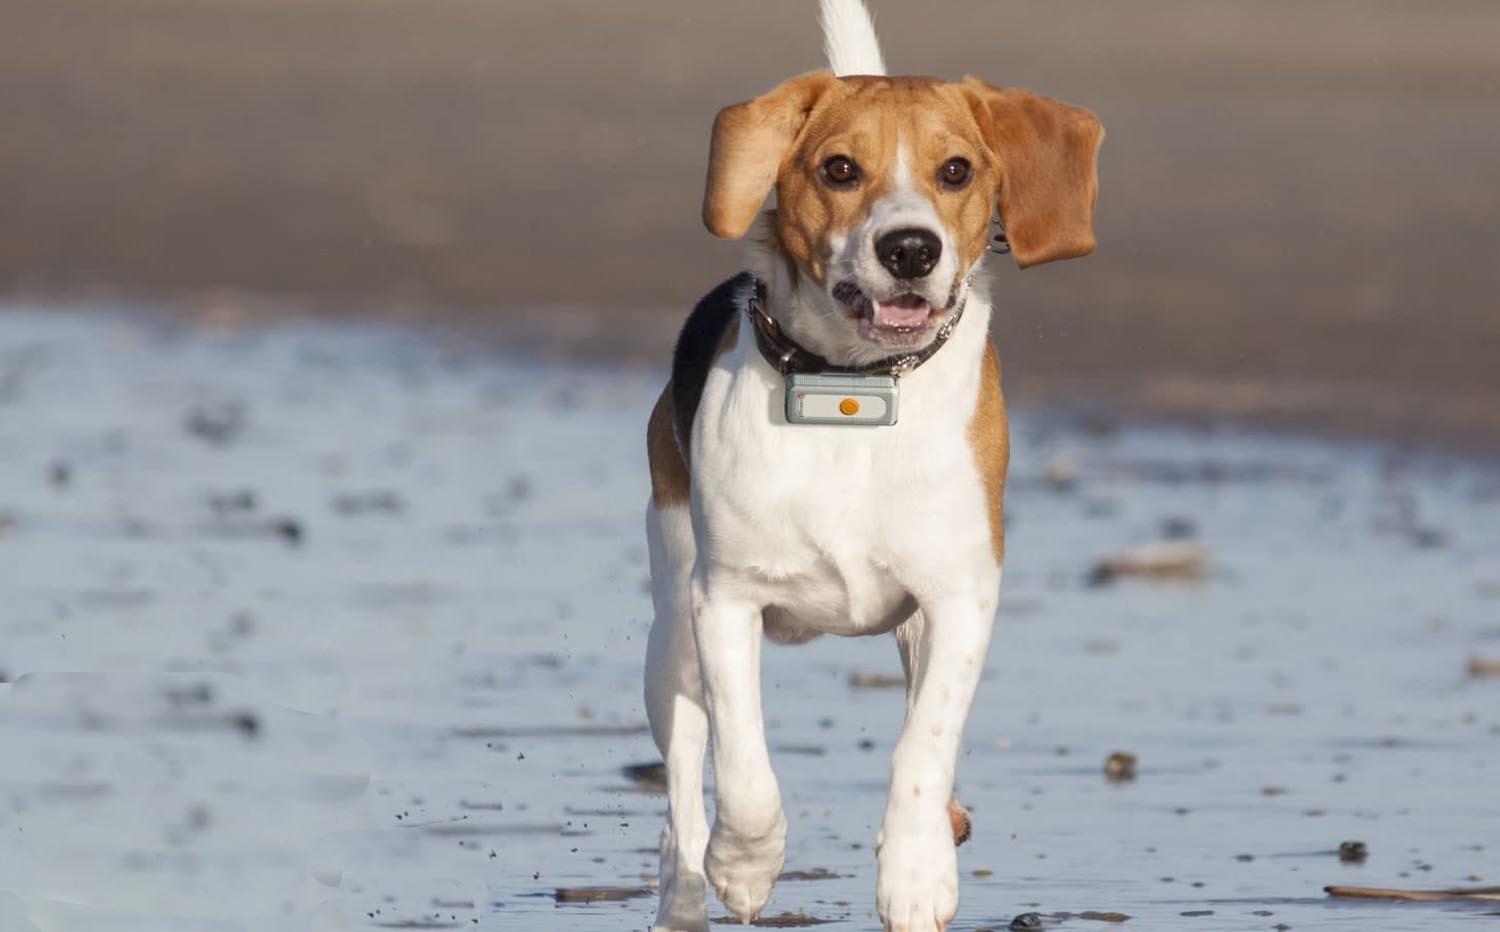 Los mejores collares de perro con GPS